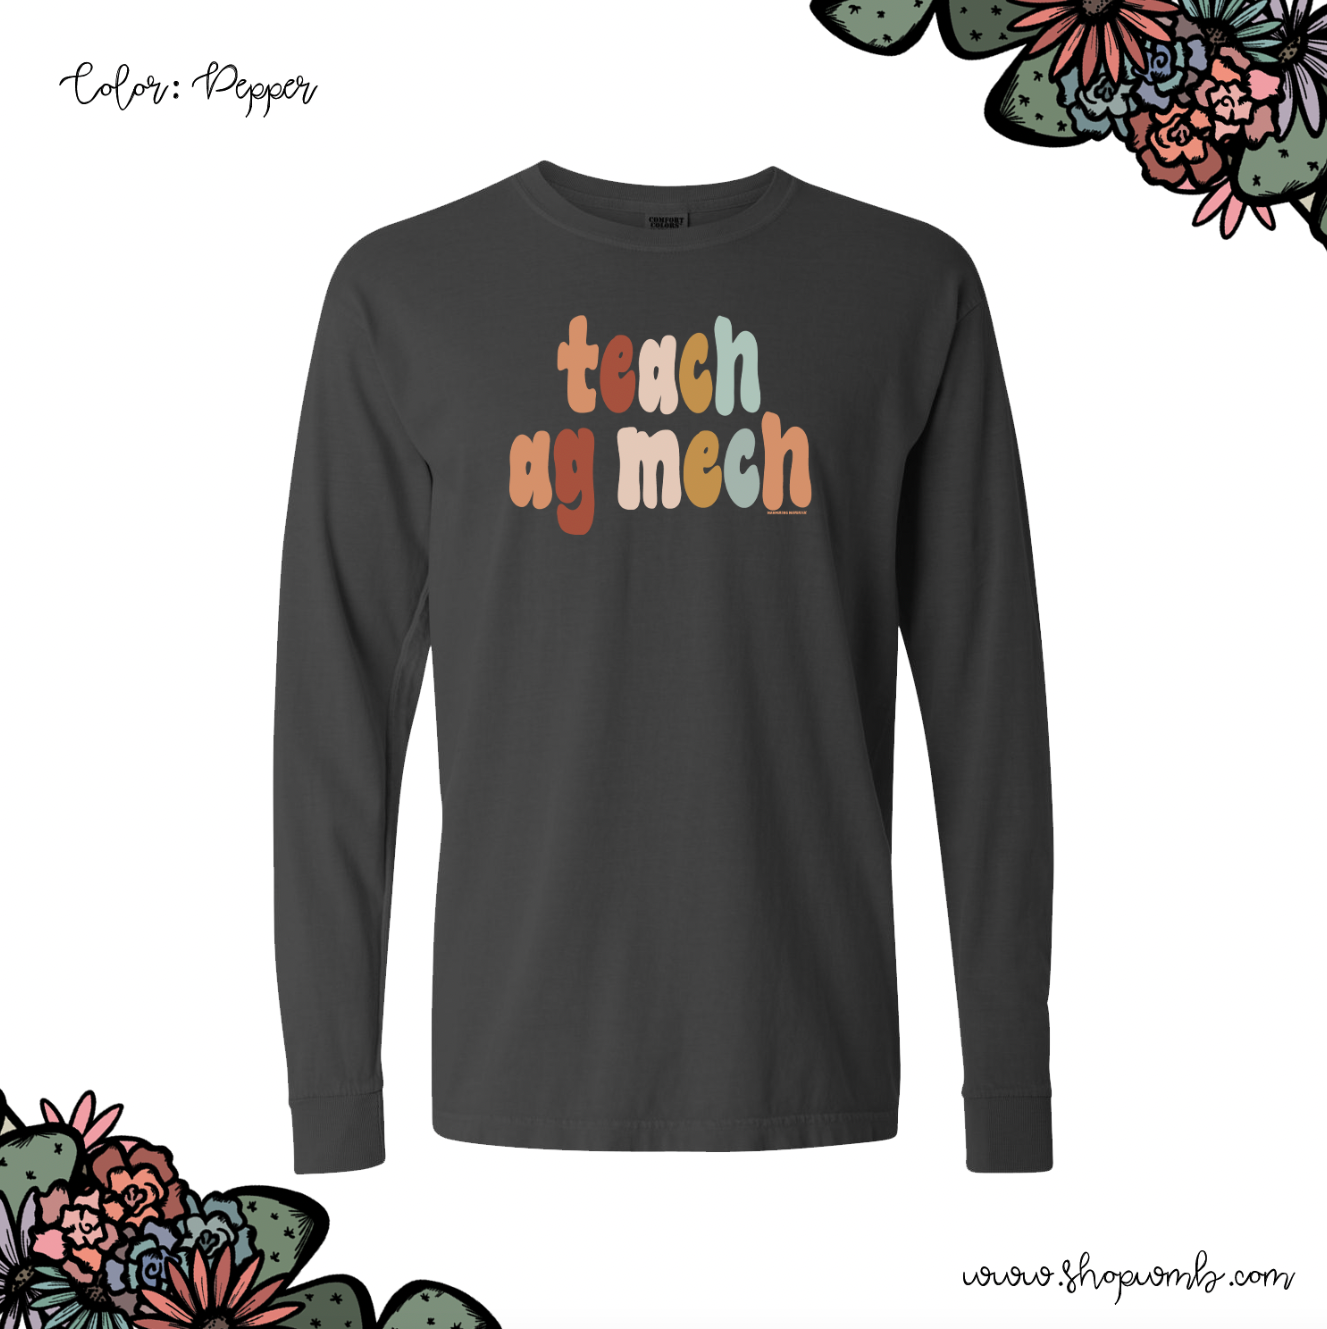 Boho Teach Ag Mech LONG SLEEVE T-Shirt (S-3XL) - Multiple Colors!